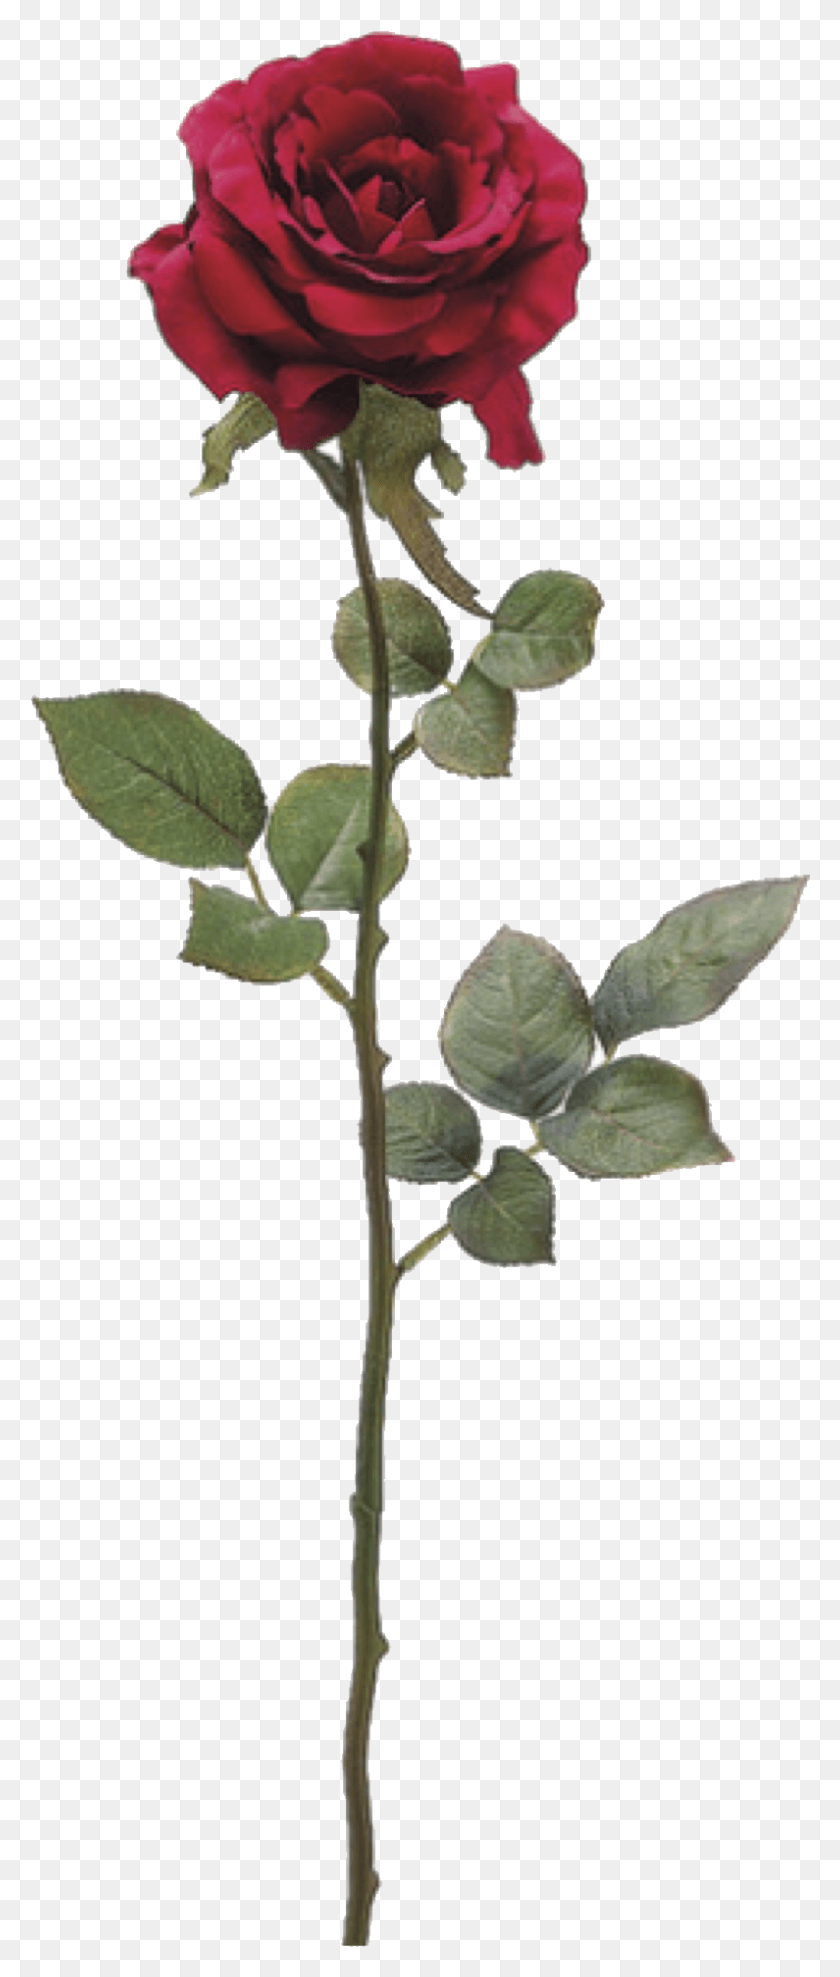 795x1954 Descargar Png Todo Va A Estar Bien American Beauty Rose, Planta, Annonaceae, Árbol Hd Png